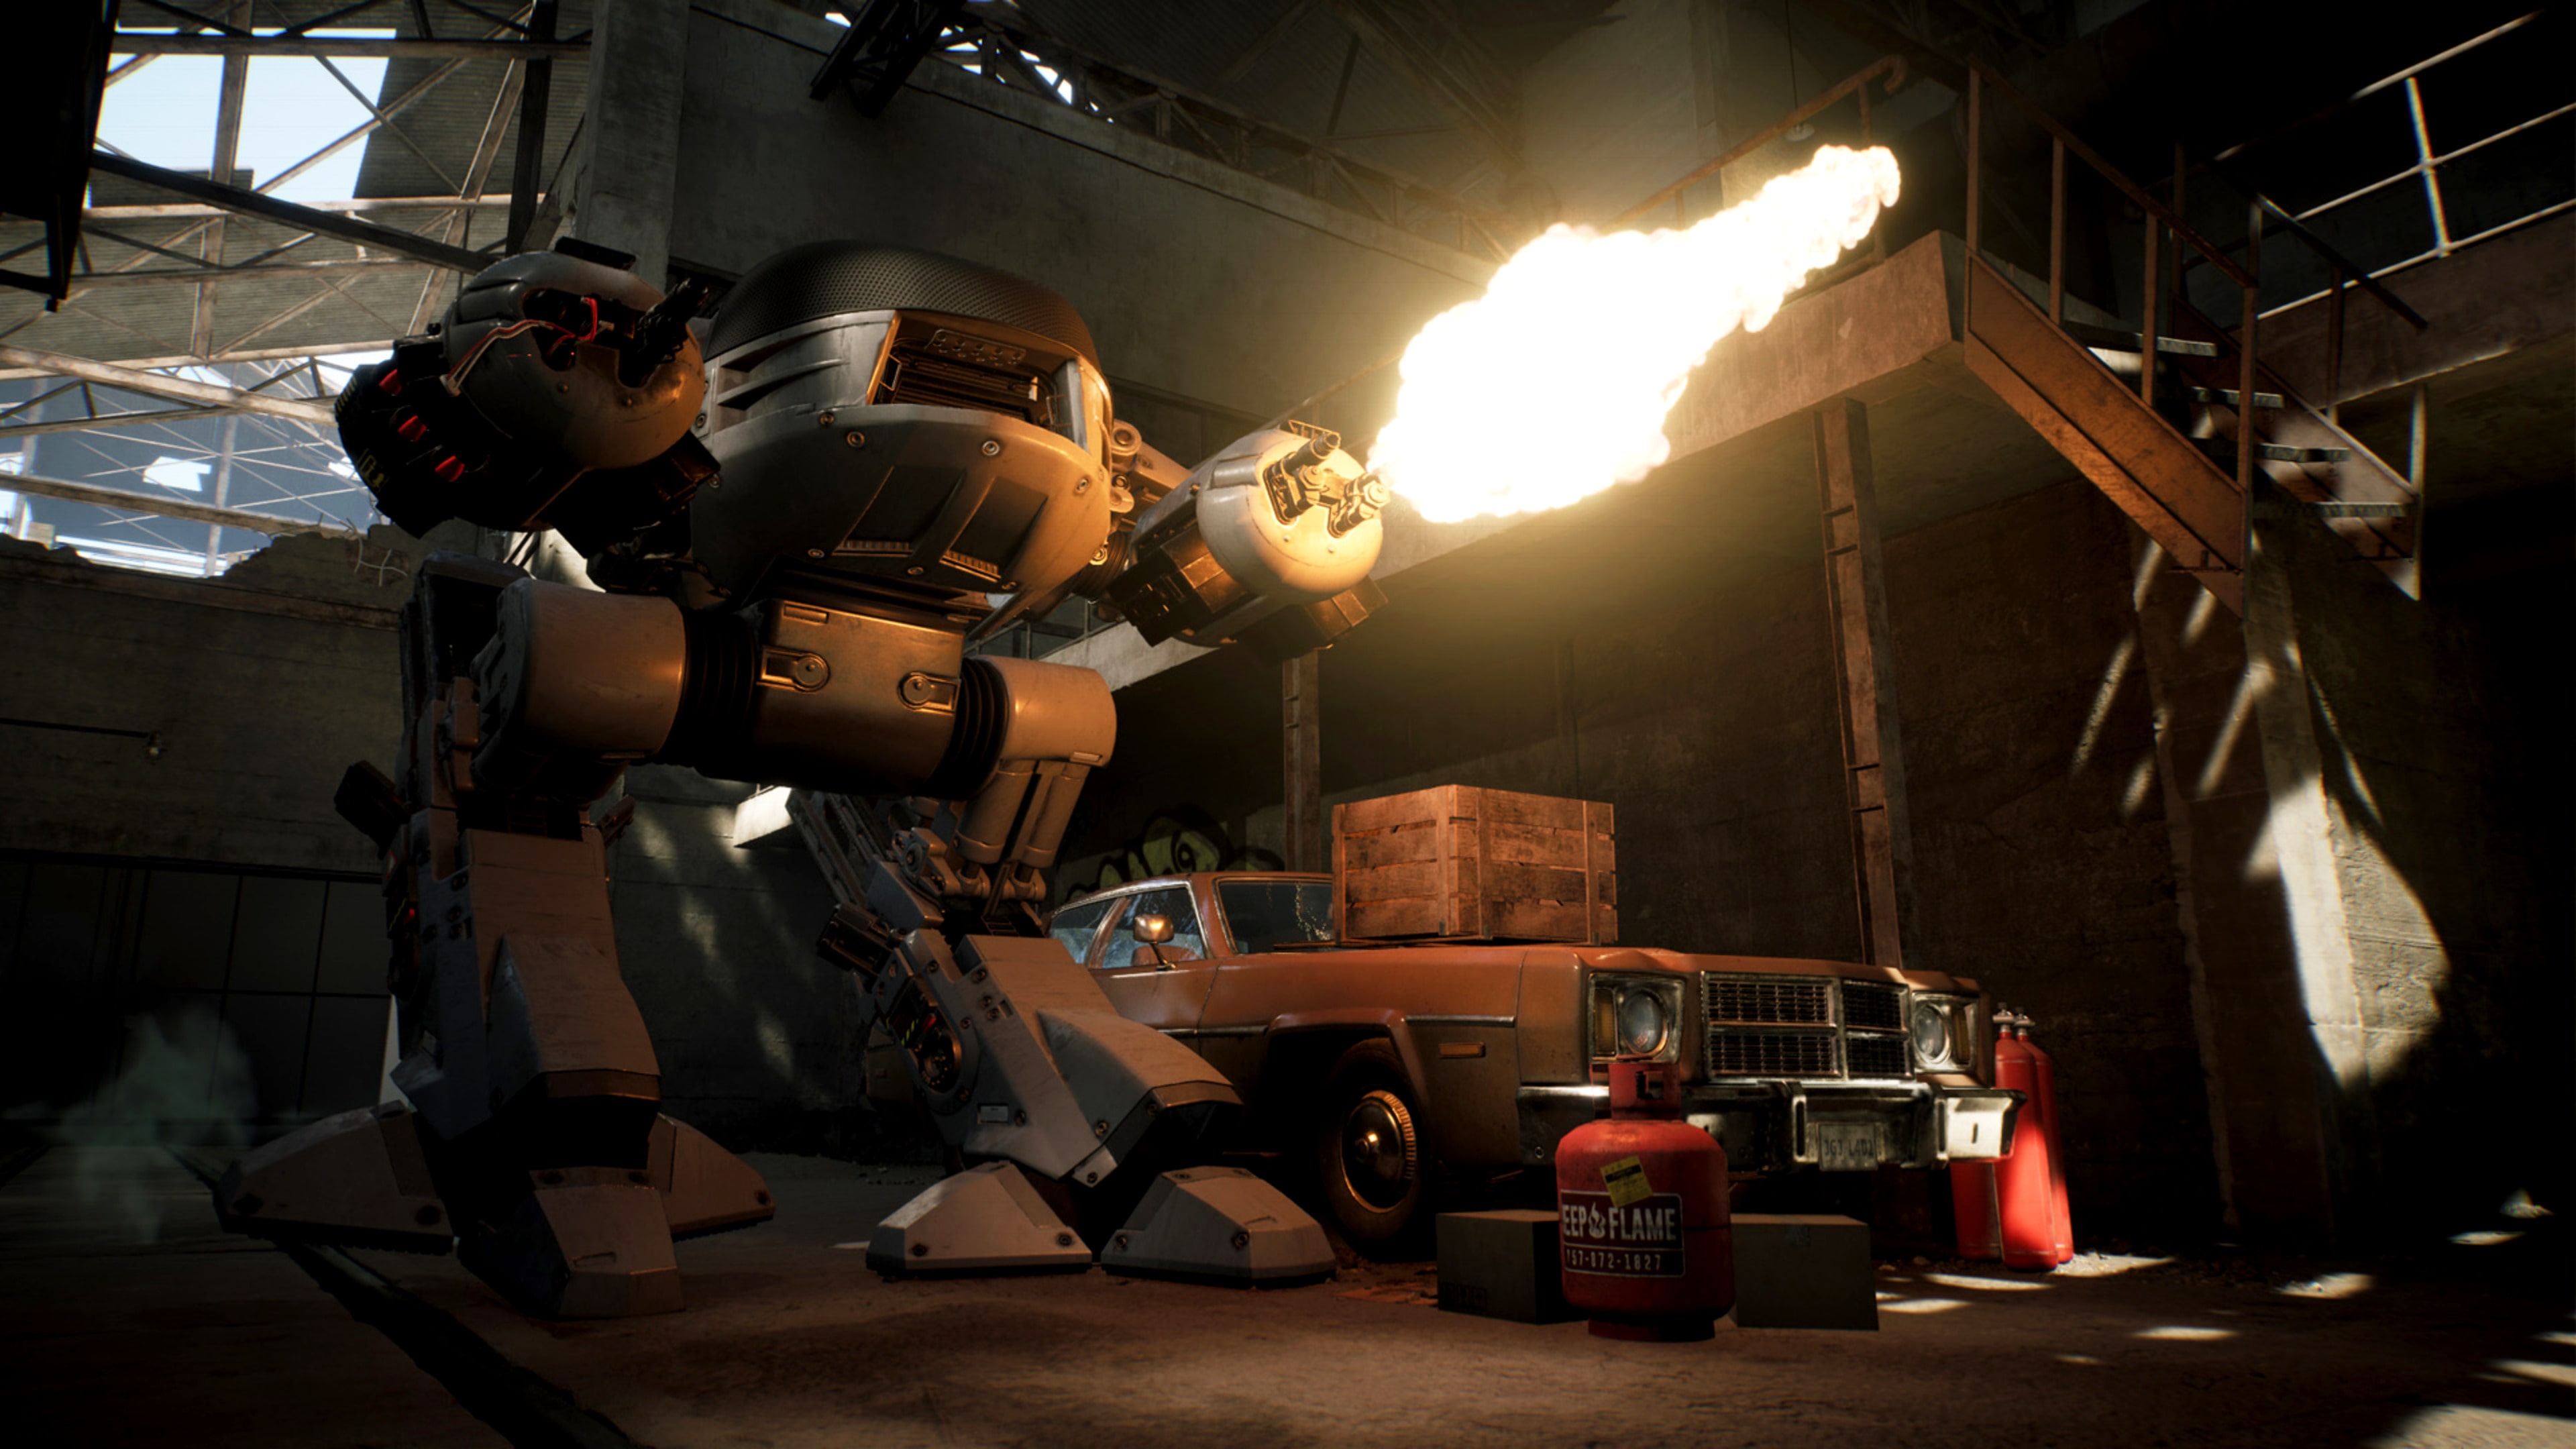 ▷ Chollo RoboCop: Rogue City para PS5 por sólo 33,99€ con envío